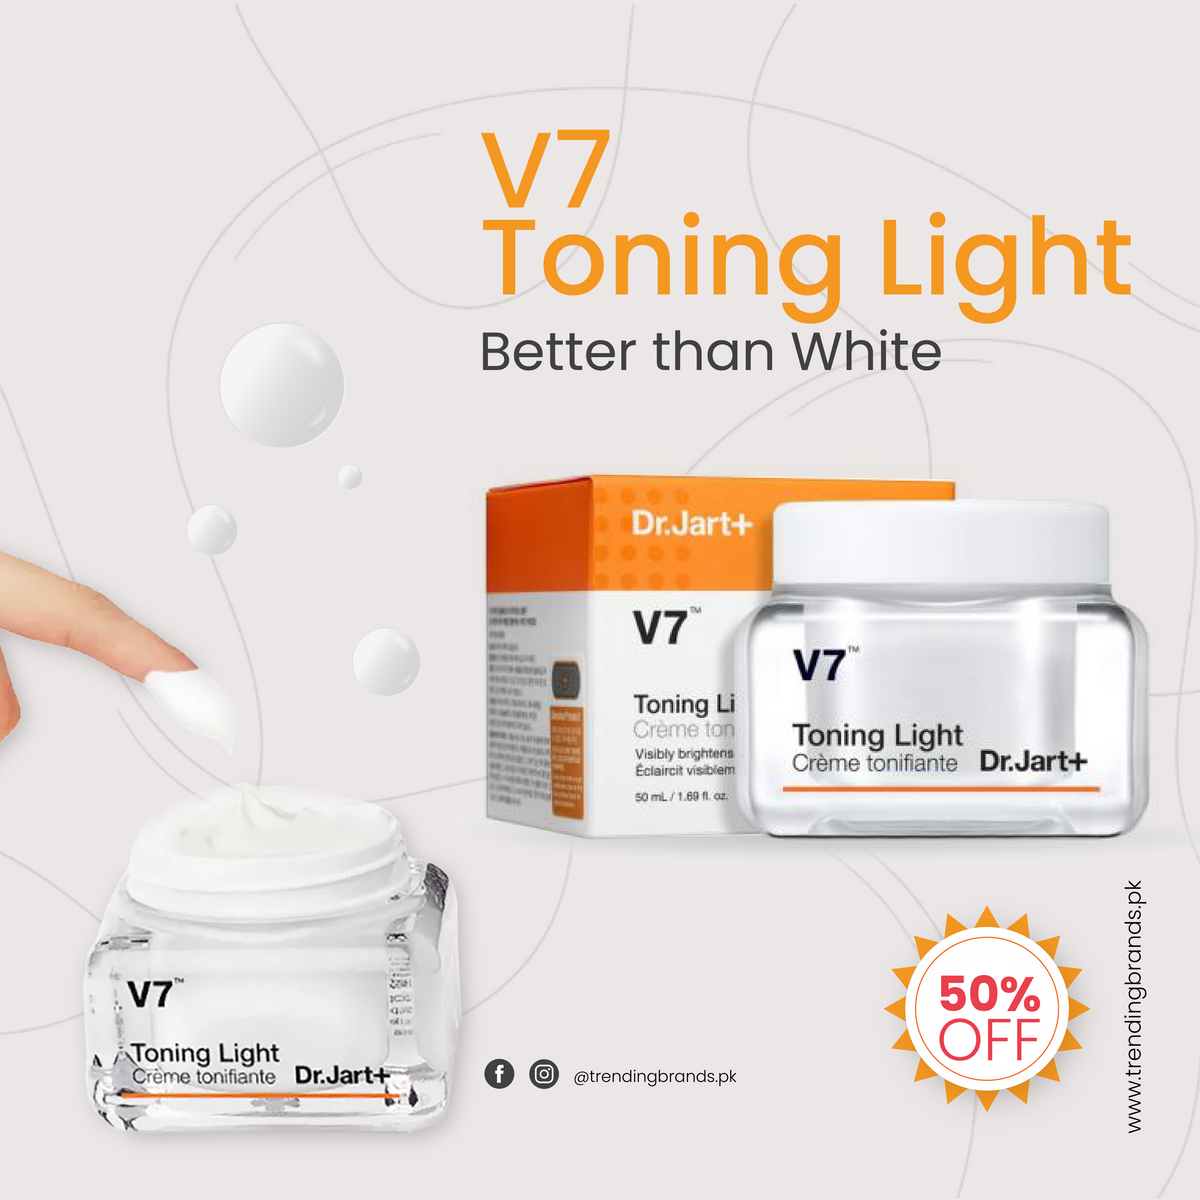 Dr.Jart+ V7 Toning Light Cream